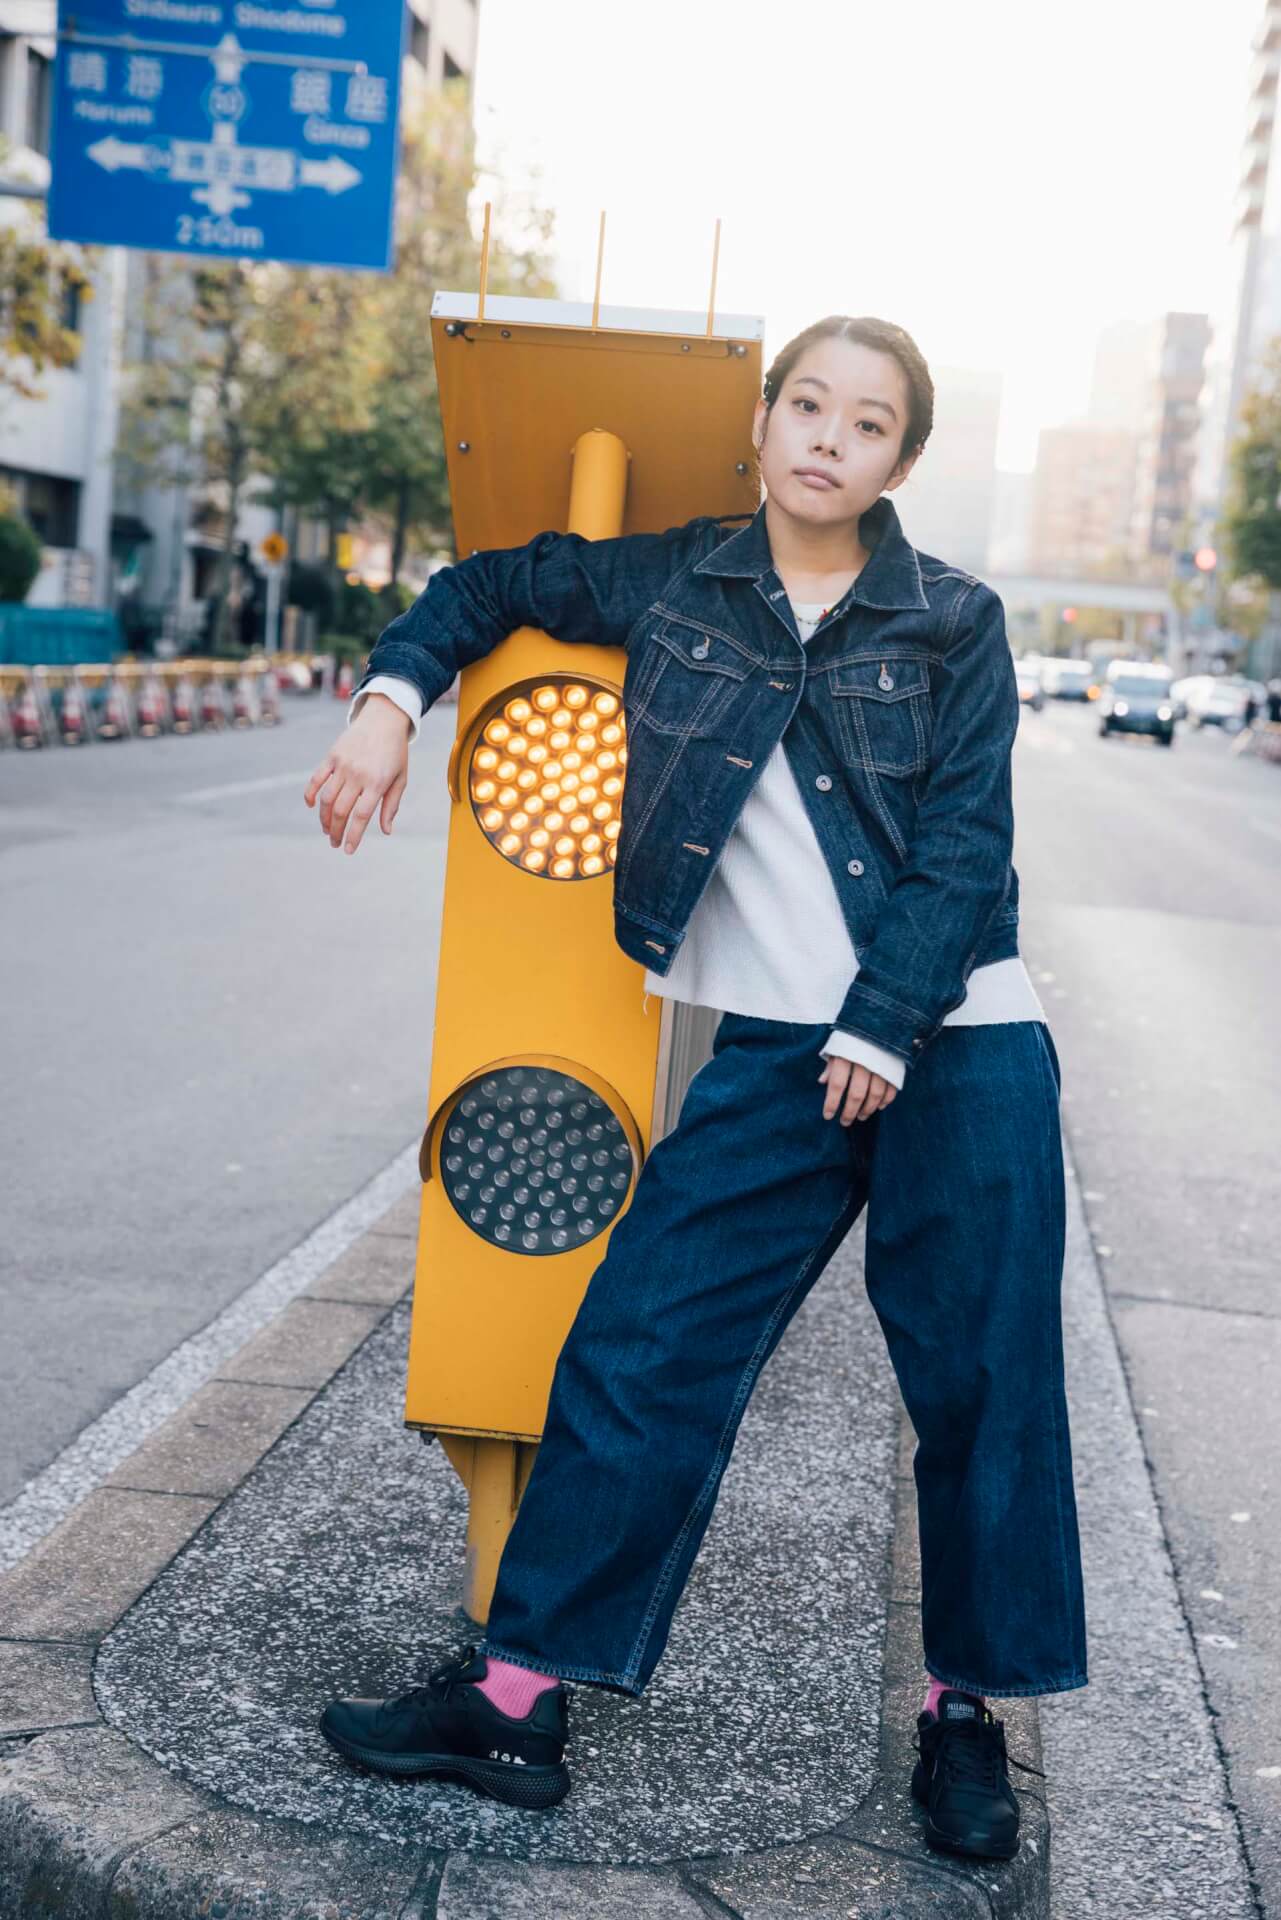 xiangyu × PALLADIUM｜エコなスニーカーから考える“サスティナブル”とファッションの関係性 fashion201221_palladium-017